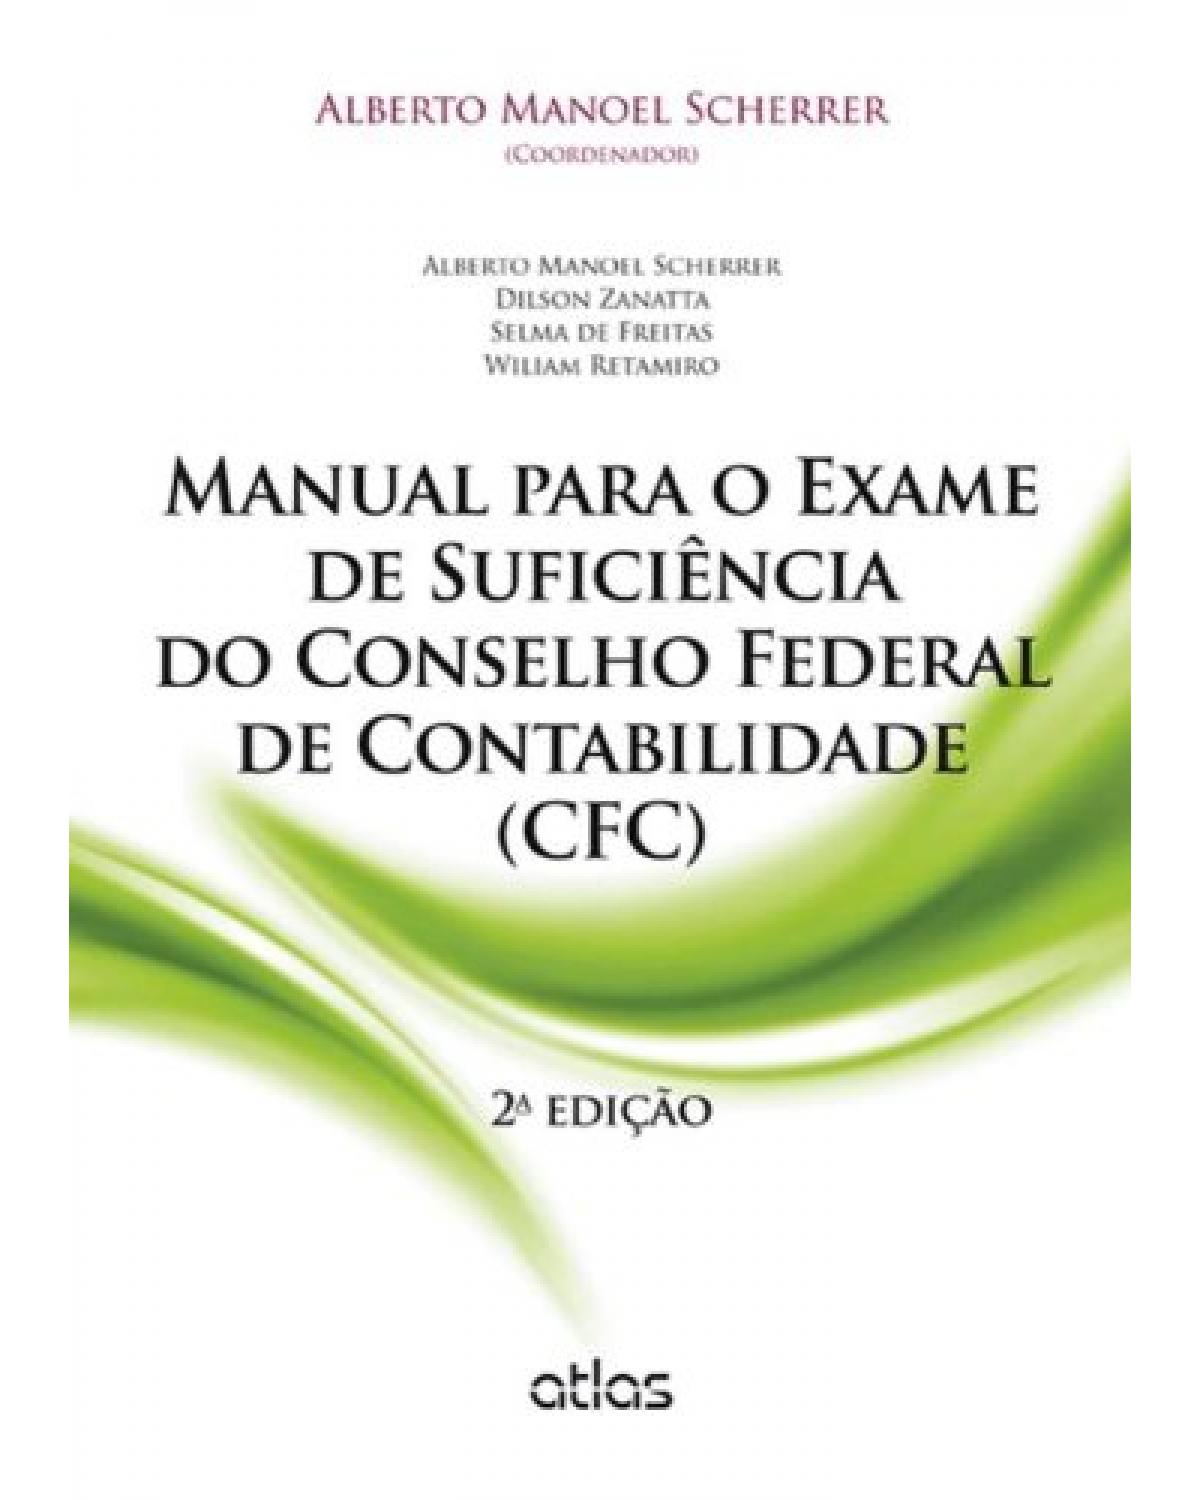 Manual para o exame de suficiência do Conselho Federal de Contabilidade (CFC) - 2ª Edição | 2013